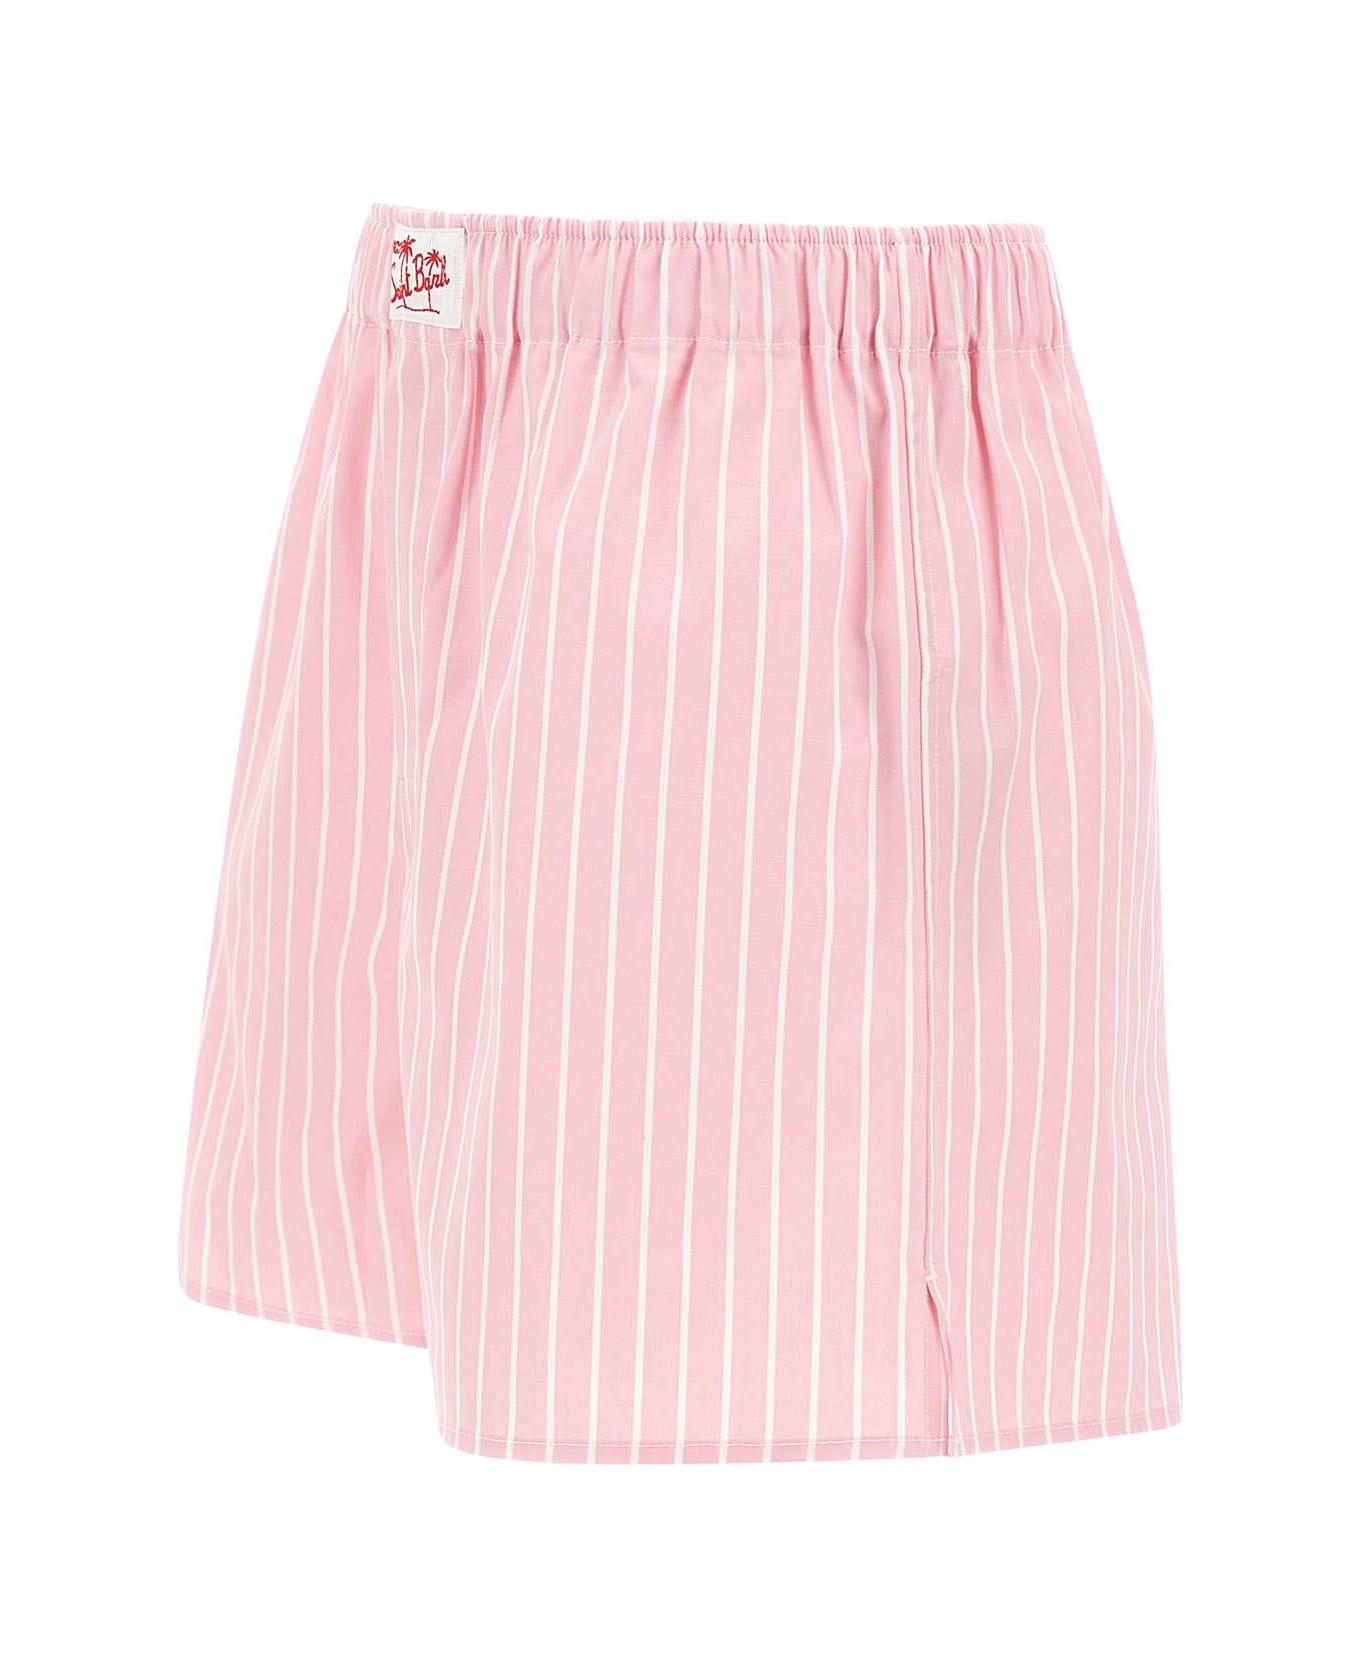 MC2 Saint Barth "boxy" Cotton Shorts - Pink/white